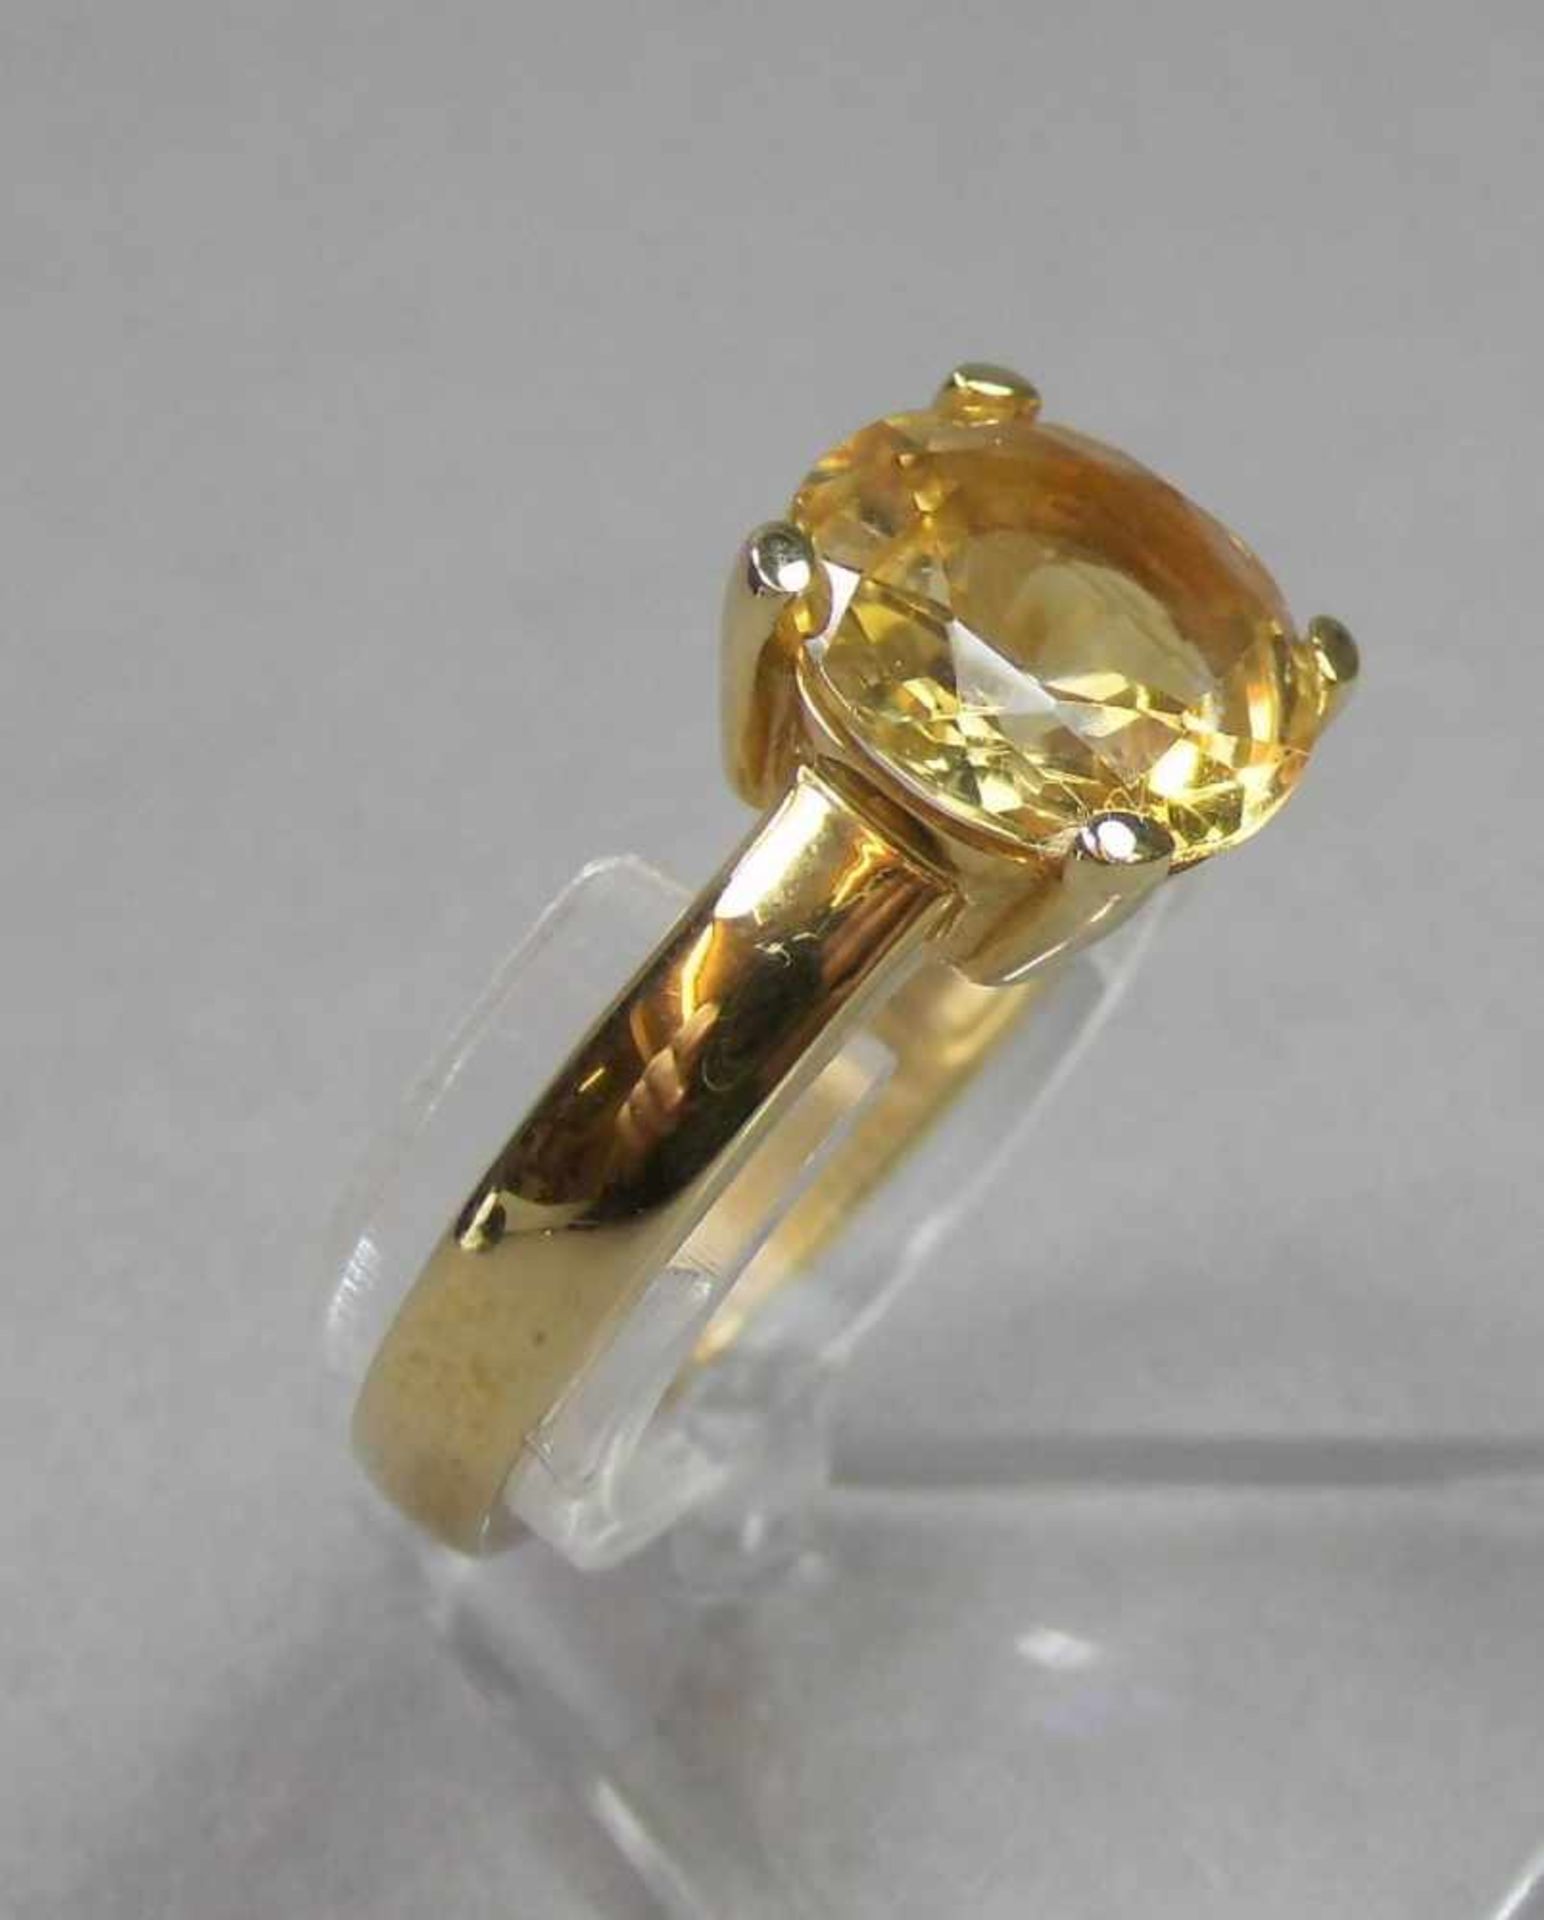 RING, 375er Gelbgold (3,8 g), besetzt mit einem Citrin. Ringkopfmaße: 1 x 1 cm, Ring-Gr. 57. - Bild 2 aus 4